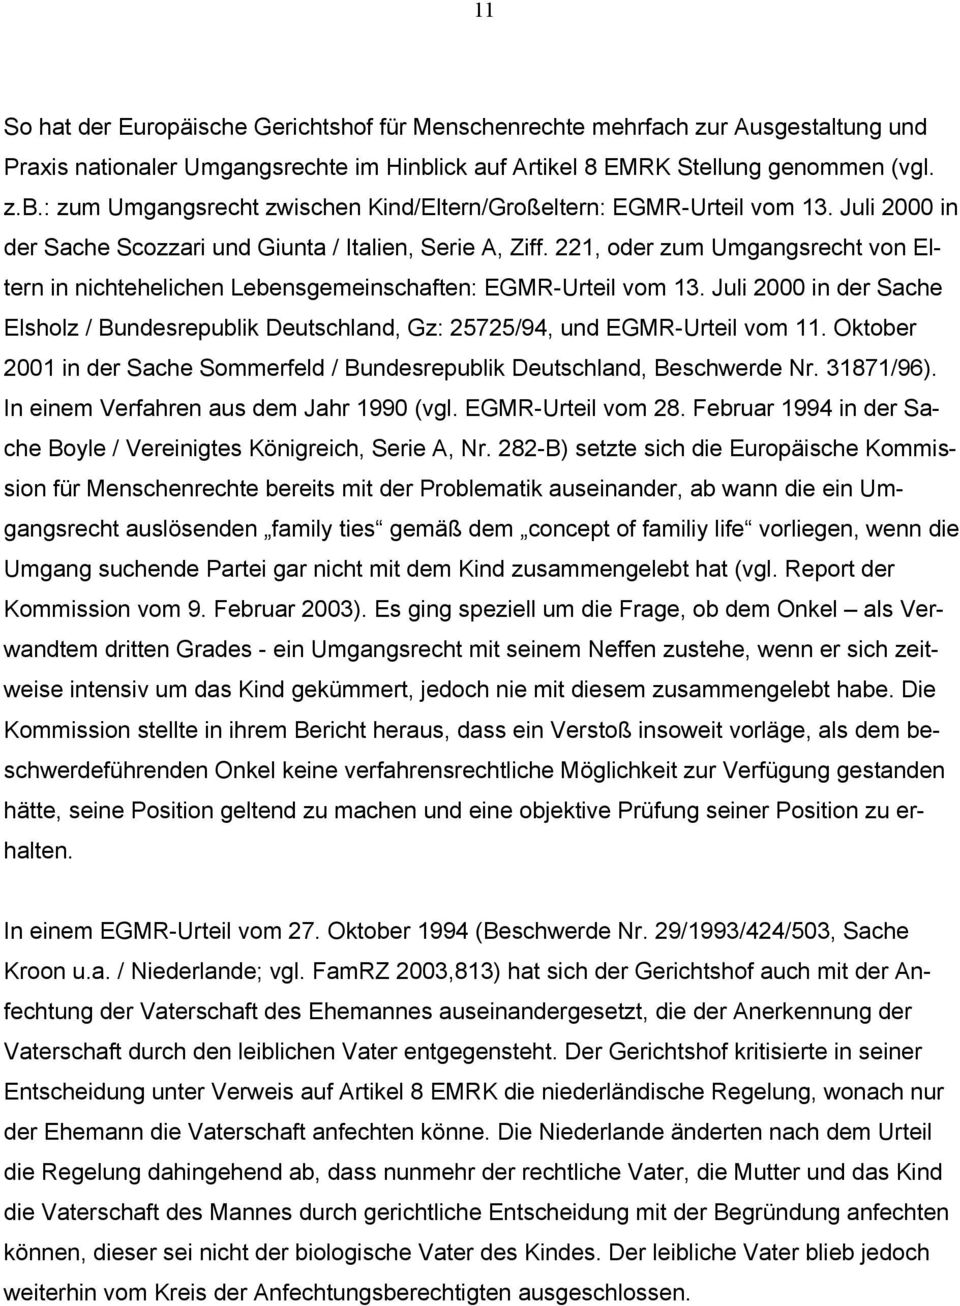 Juli 2000 in der Sache Elsholz / Bundesrepublik Deutschland, Gz: 25725/94, und EGMR-Urteil vom 11. Oktober 2001 in der Sache Sommerfeld / Bundesrepublik Deutschland, Beschwerde Nr. 31871/96).